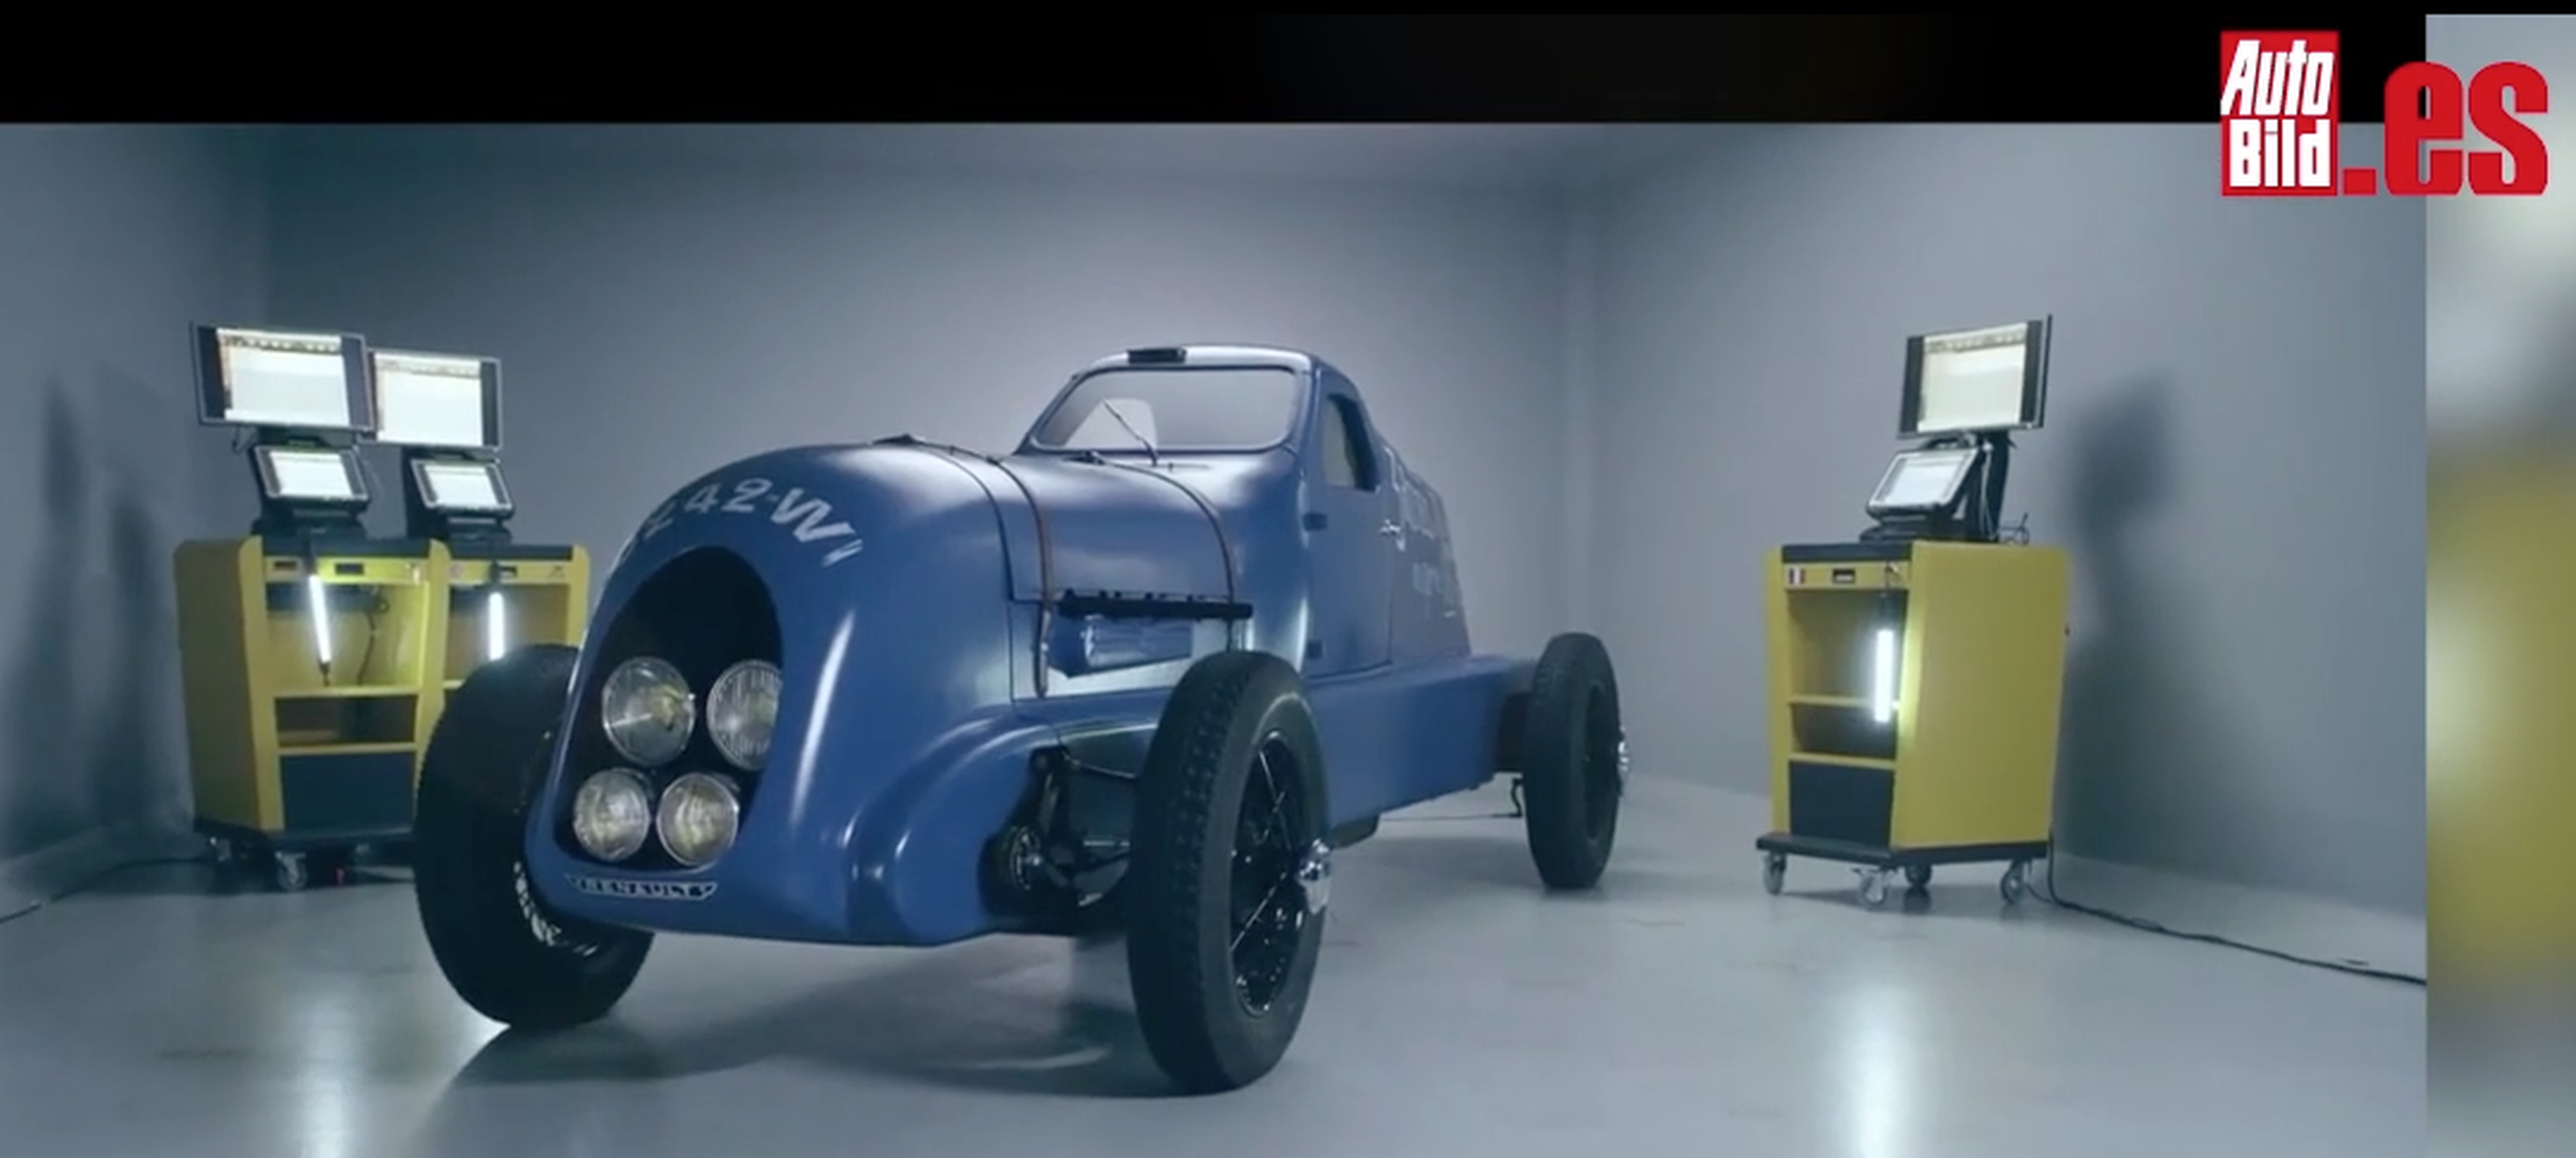 Vídeo: El Renault Nervasport vuelve a la vida